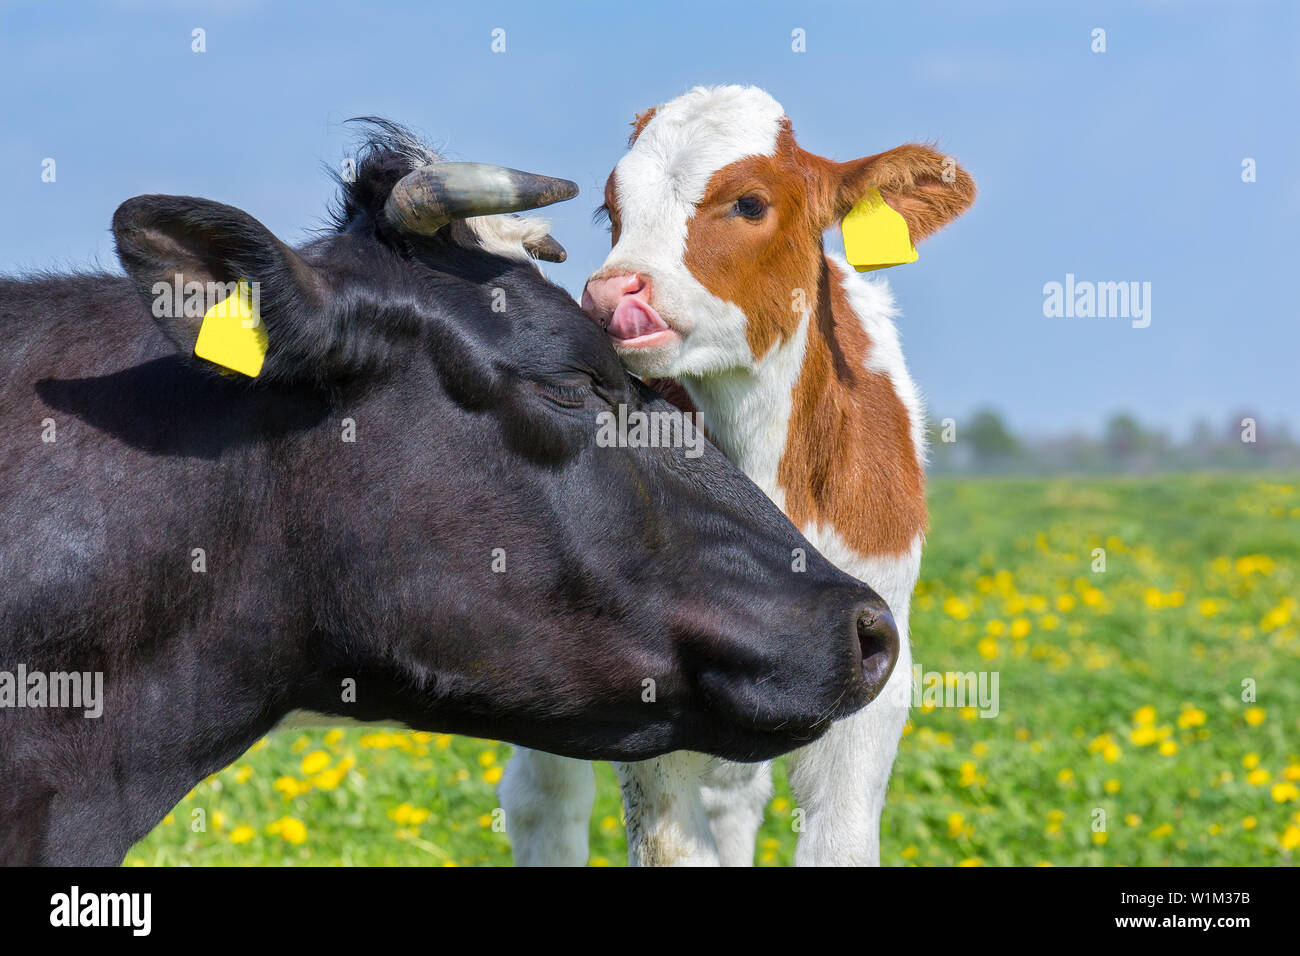 Les chefs d'Portrait mère vache et veau nouveau-né dans les pâturages européen en fleurs Banque D'Images